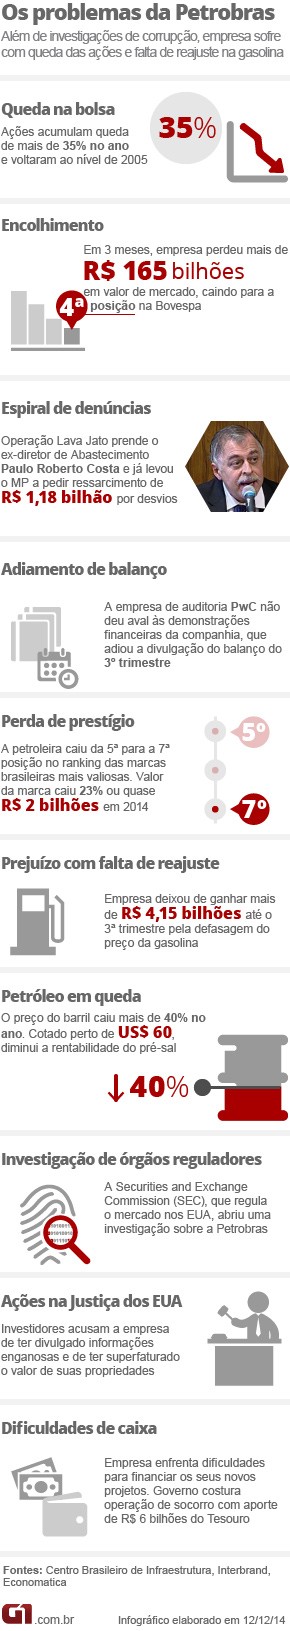 Arte problemas na Petrobras_Versão05_01_2015 (Foto: Arte/G1)